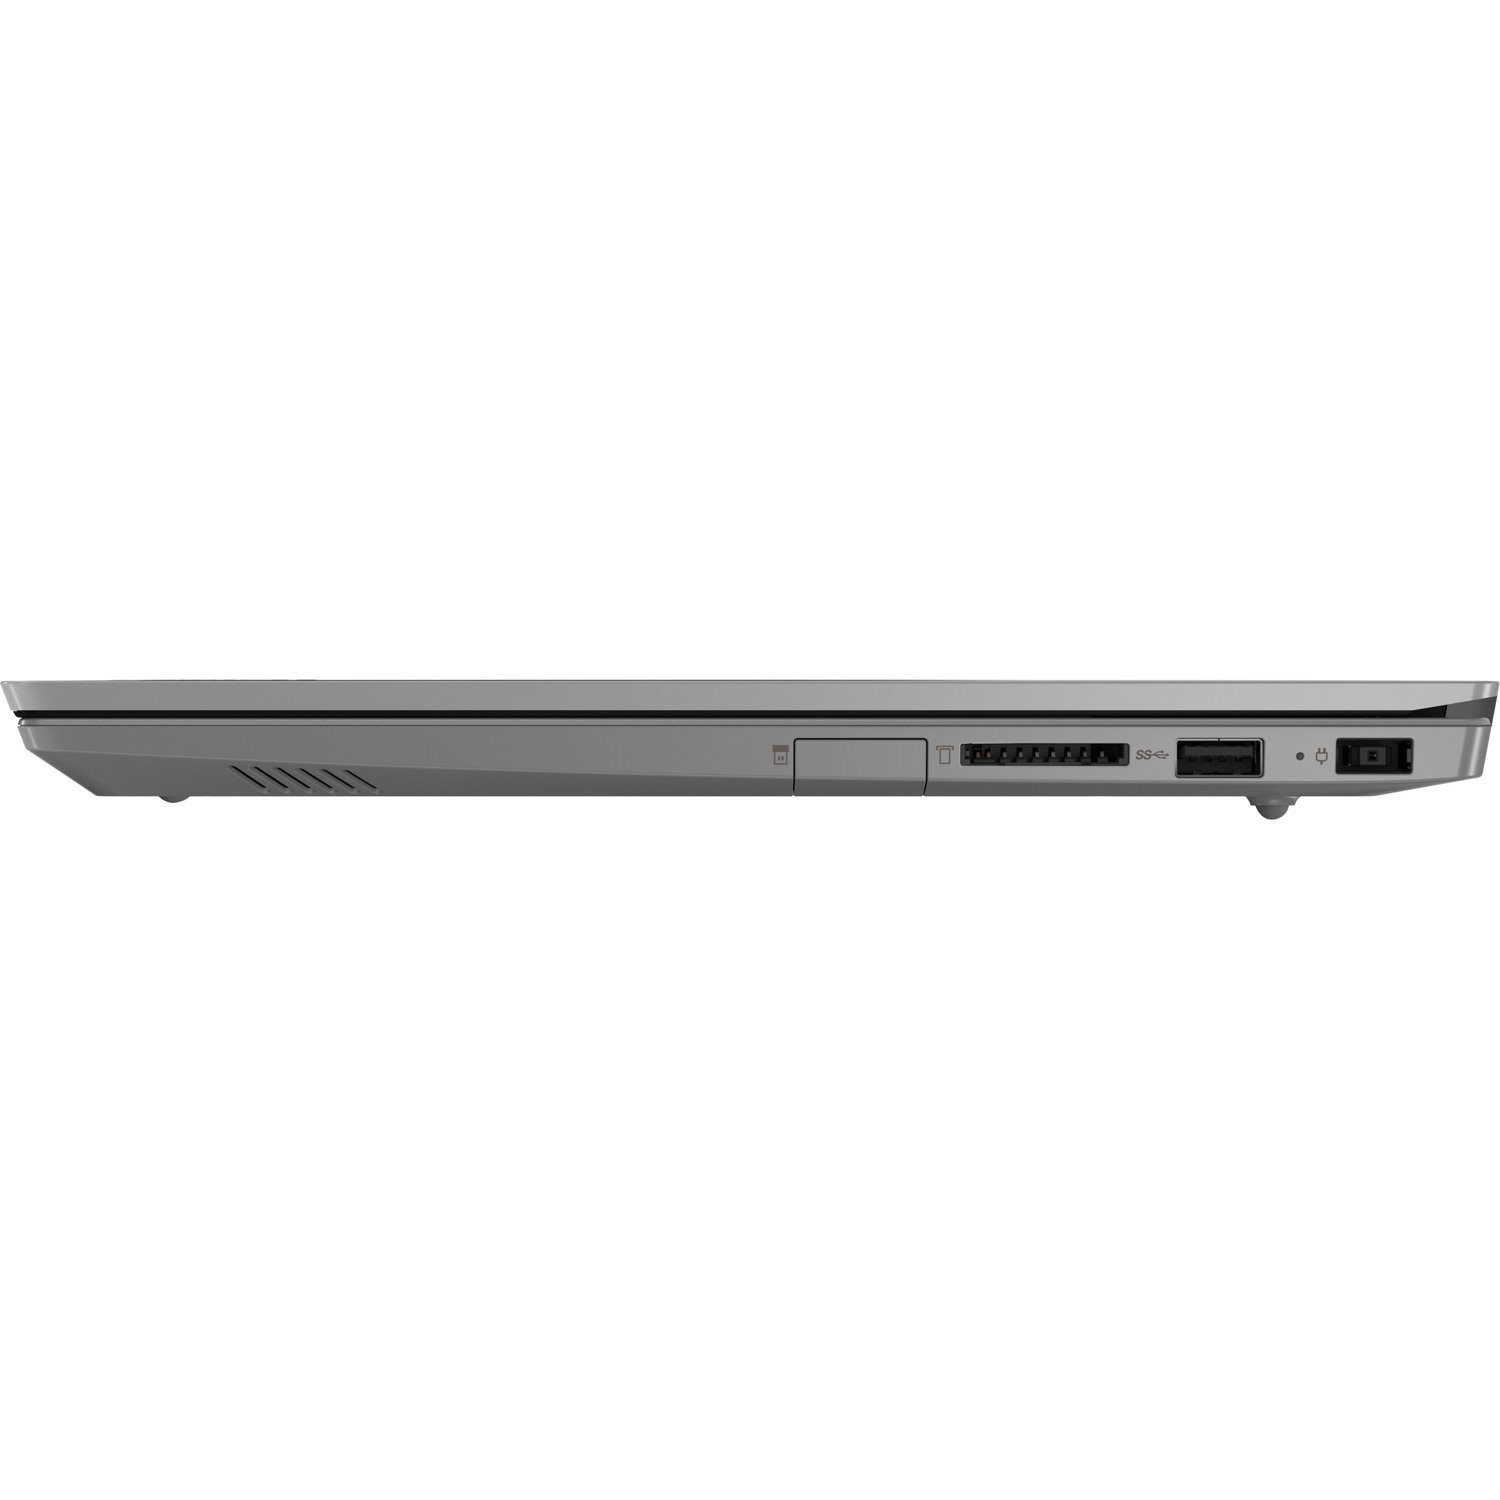 Lenovo ThinkBook 14-IIL 20SL0012US 14" Notebook - Full HD - 1920 x 1080 - Intel Core i7 10th Gen i7-1065G7 Quad-core (4 Core) 1.30 GHz - 8 GB Total RAM - 512 GB SSD - Mineral Gray